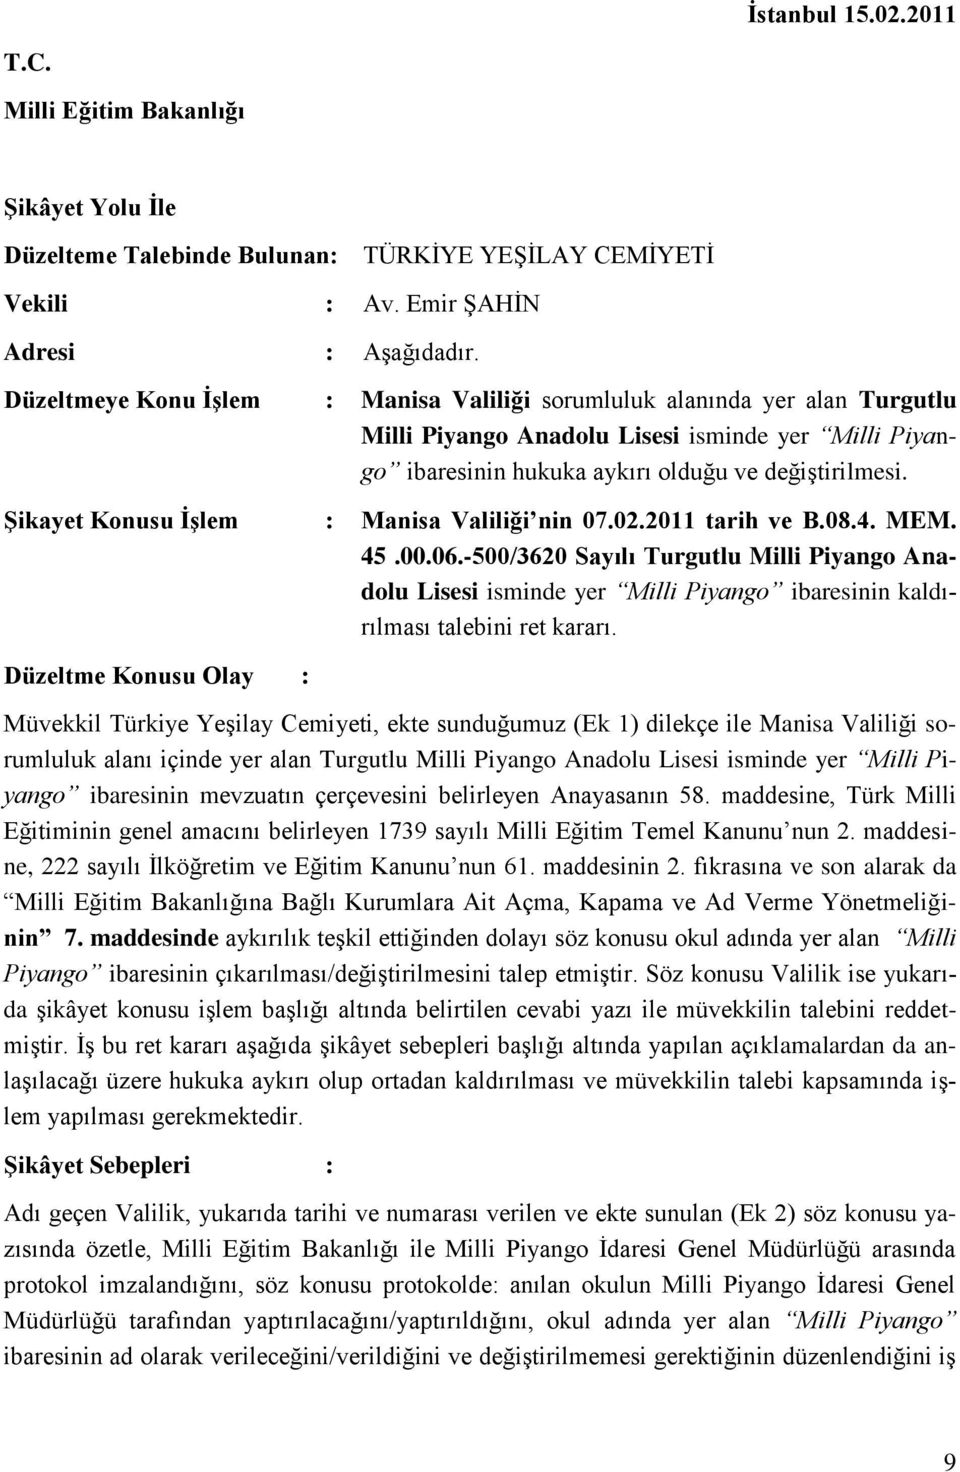 Şikayet Konusu İşlem : Manisa Valiliği nin 07.02.2011 tarih ve B.08.4. MEM. 45.00.06.